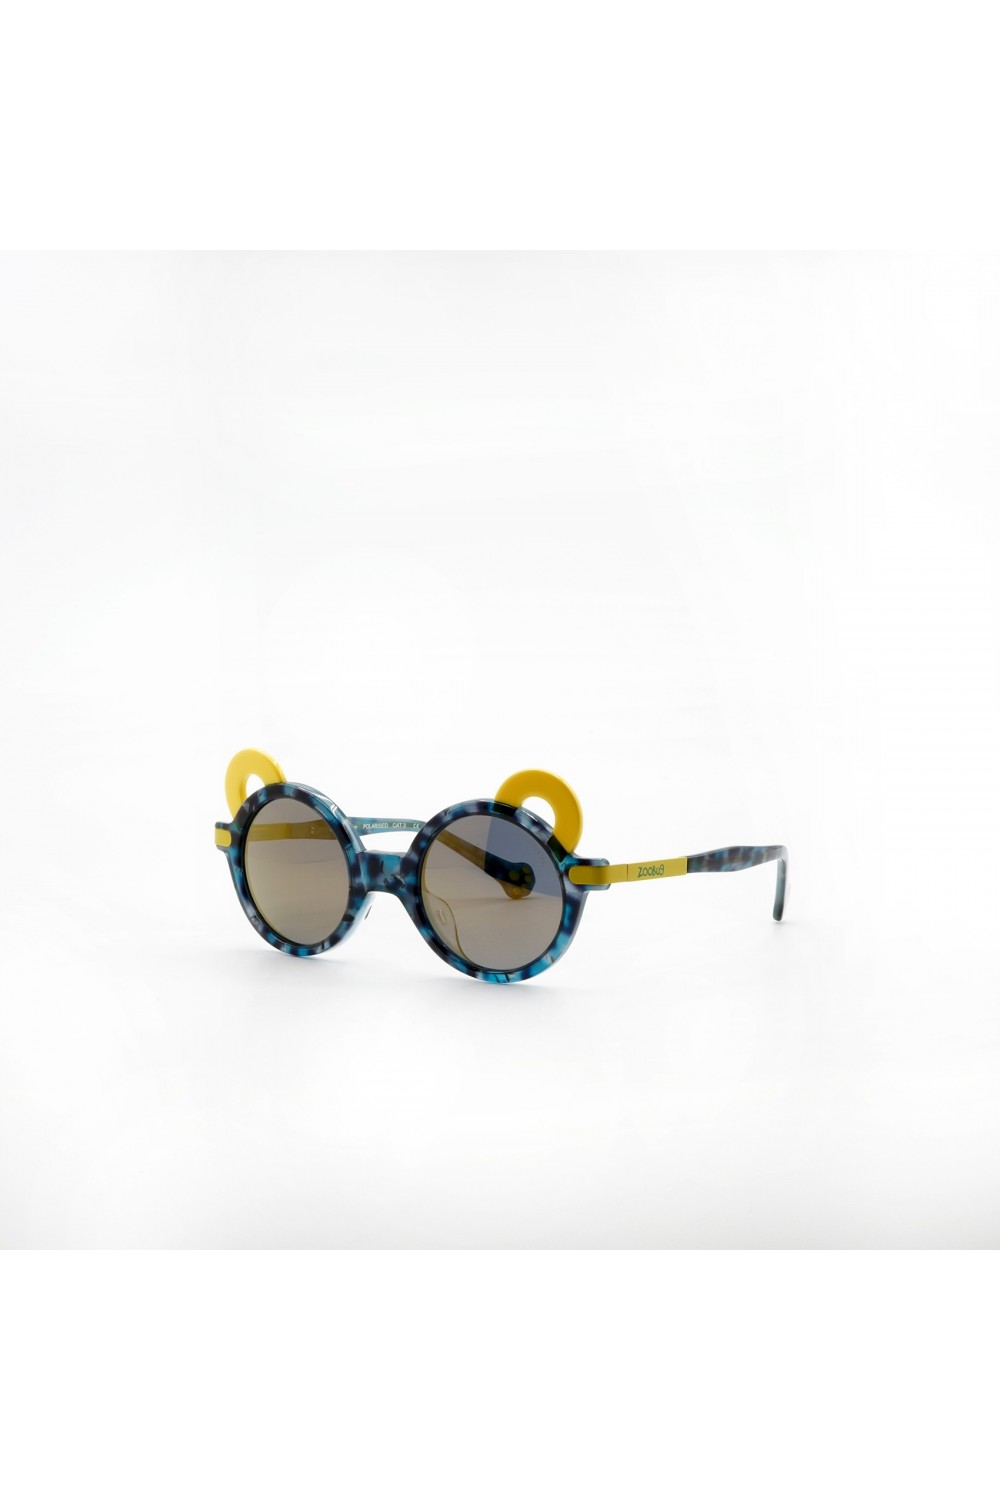 Zoobug - Occhiali da sole in celluloide tondi per bambini blu, giallo - ZB5034